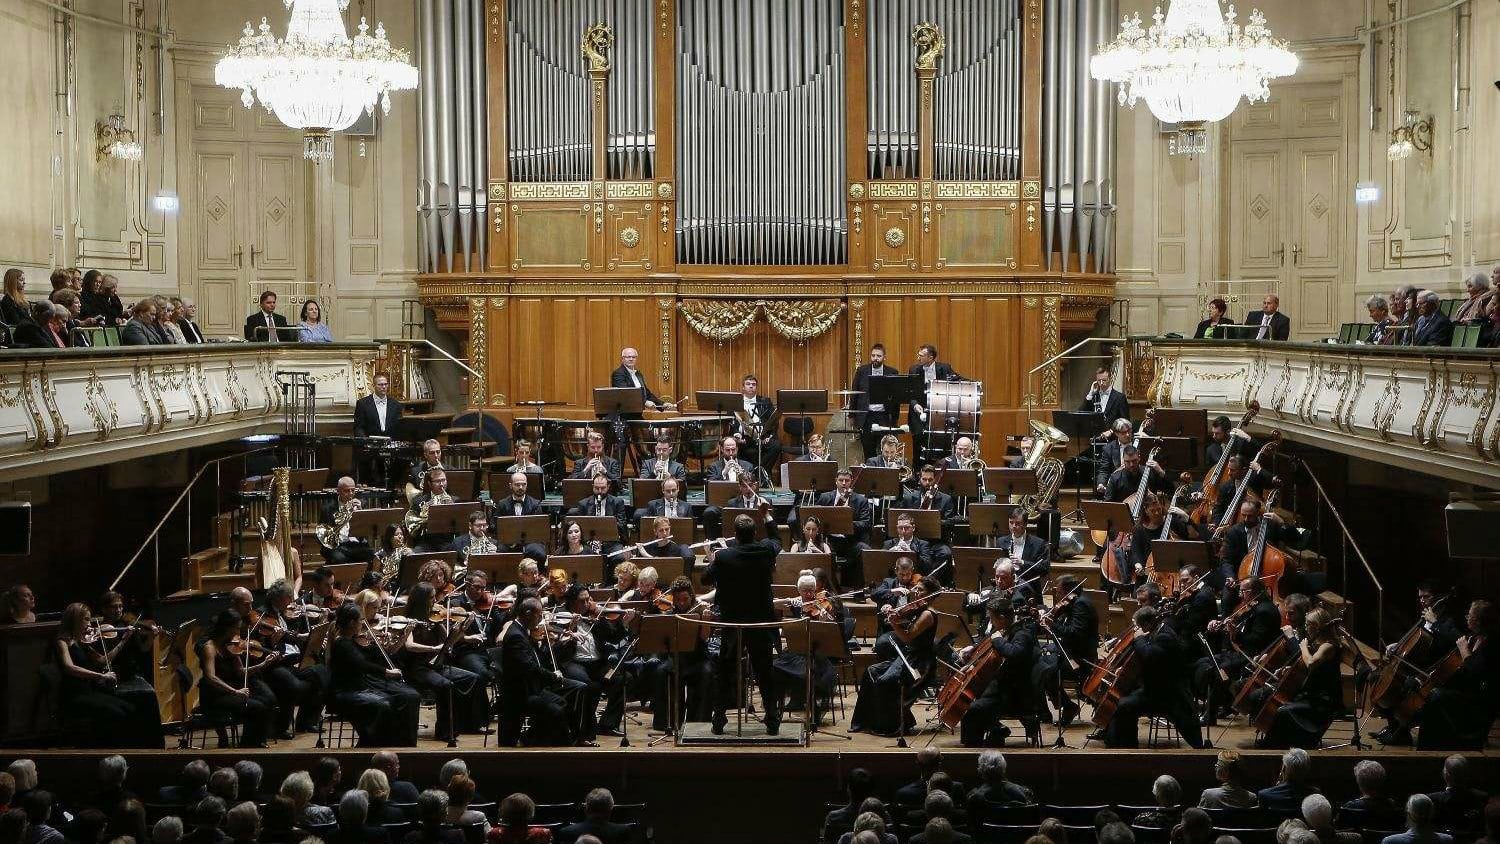 Novogodišnji koncerti Beogradske filharmonije 27. i 28. decembra 1